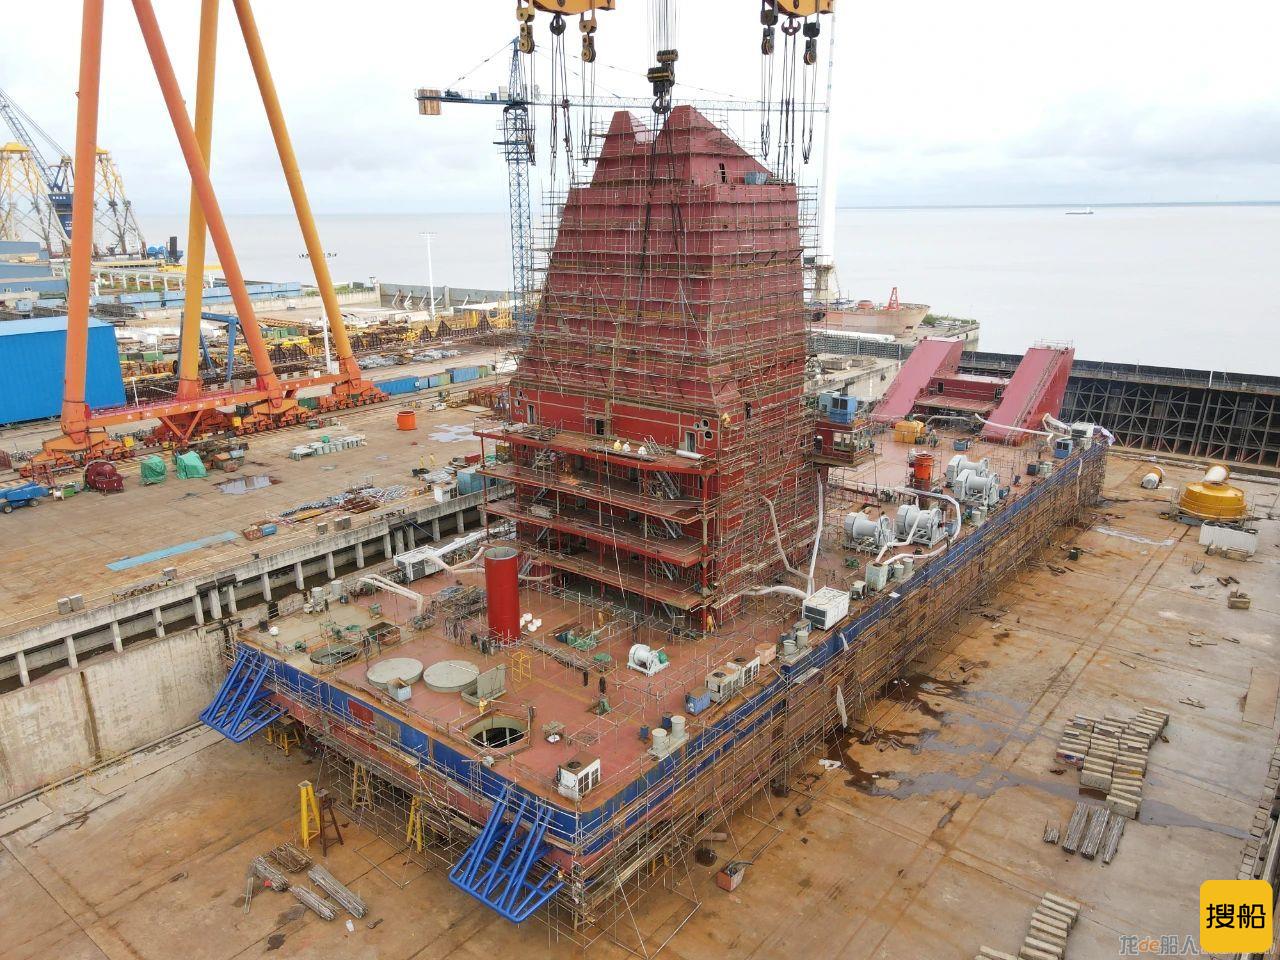 振华启东海工140米级打桩船圆满完成主船体吊装工作